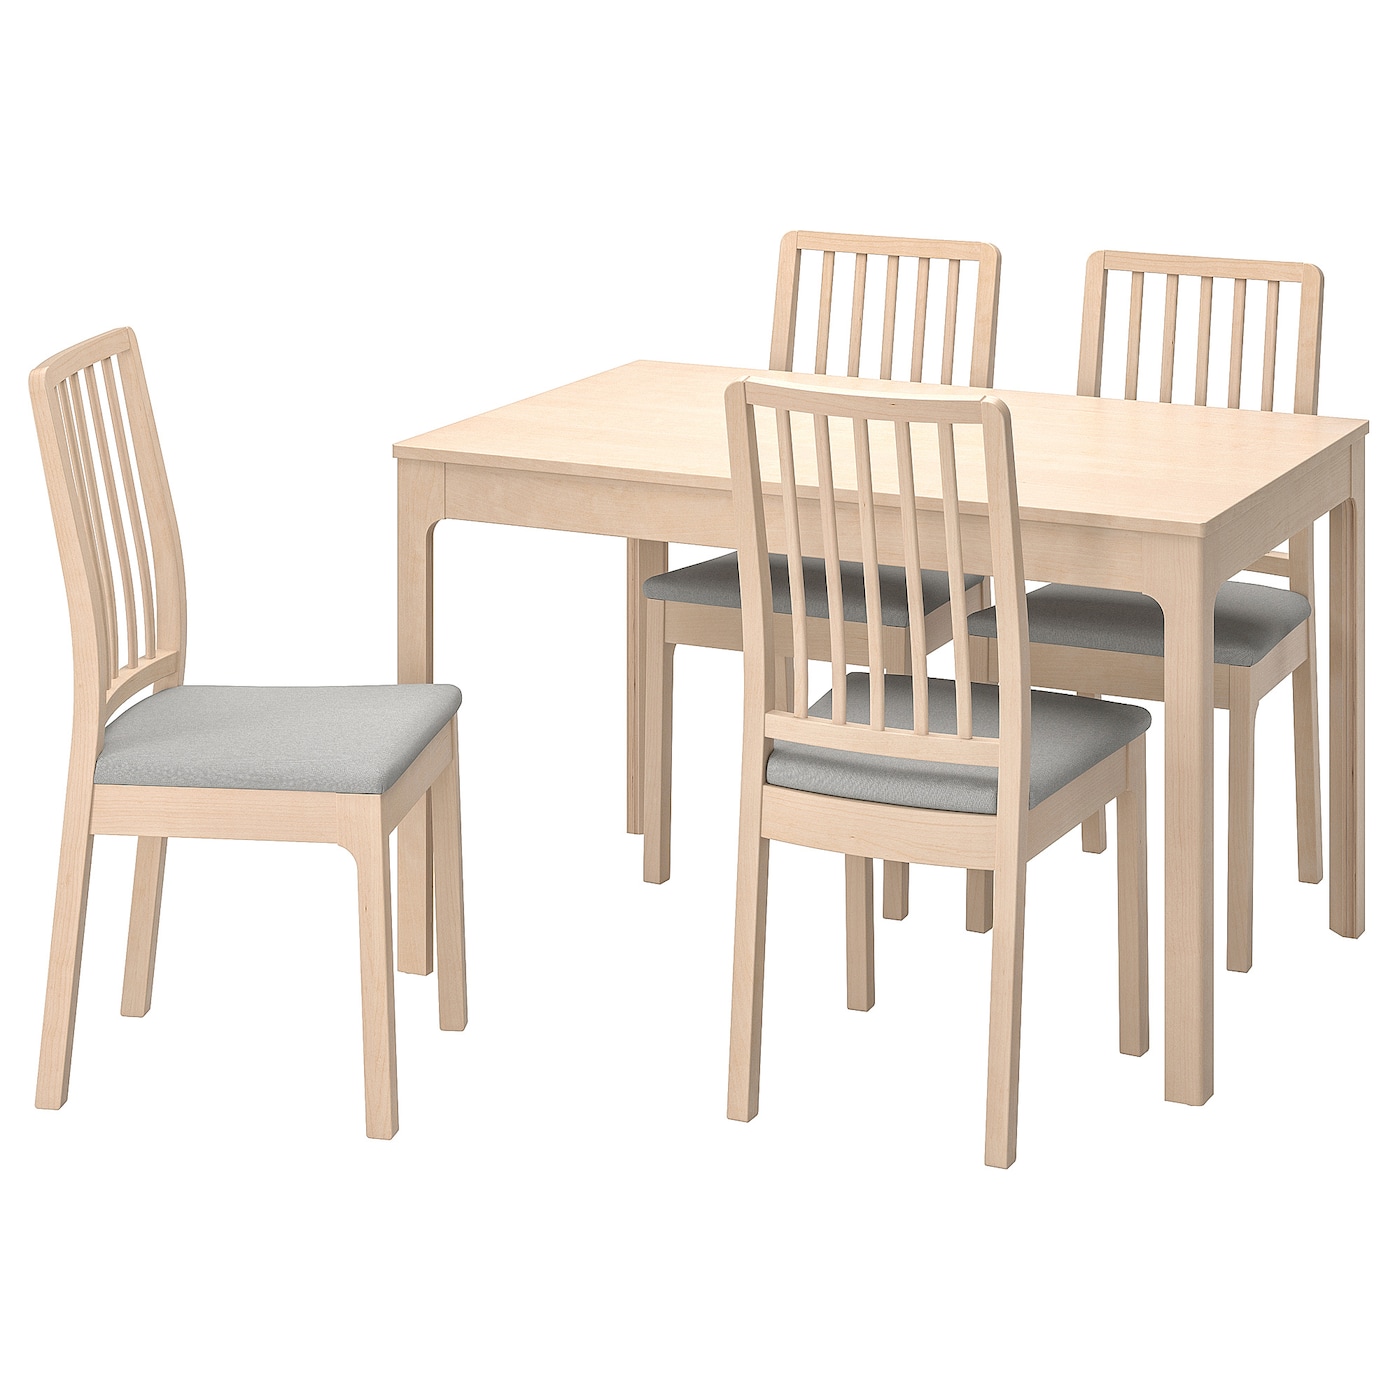 EKEDALEN / EKEDALEN Tisch und 4 Stühle  - Essplatzgruppe - Möbel Ideen für dein Zuhause von Home Trends. Möbel Trends von Social Media Influencer für dein Skandi Zuhause.